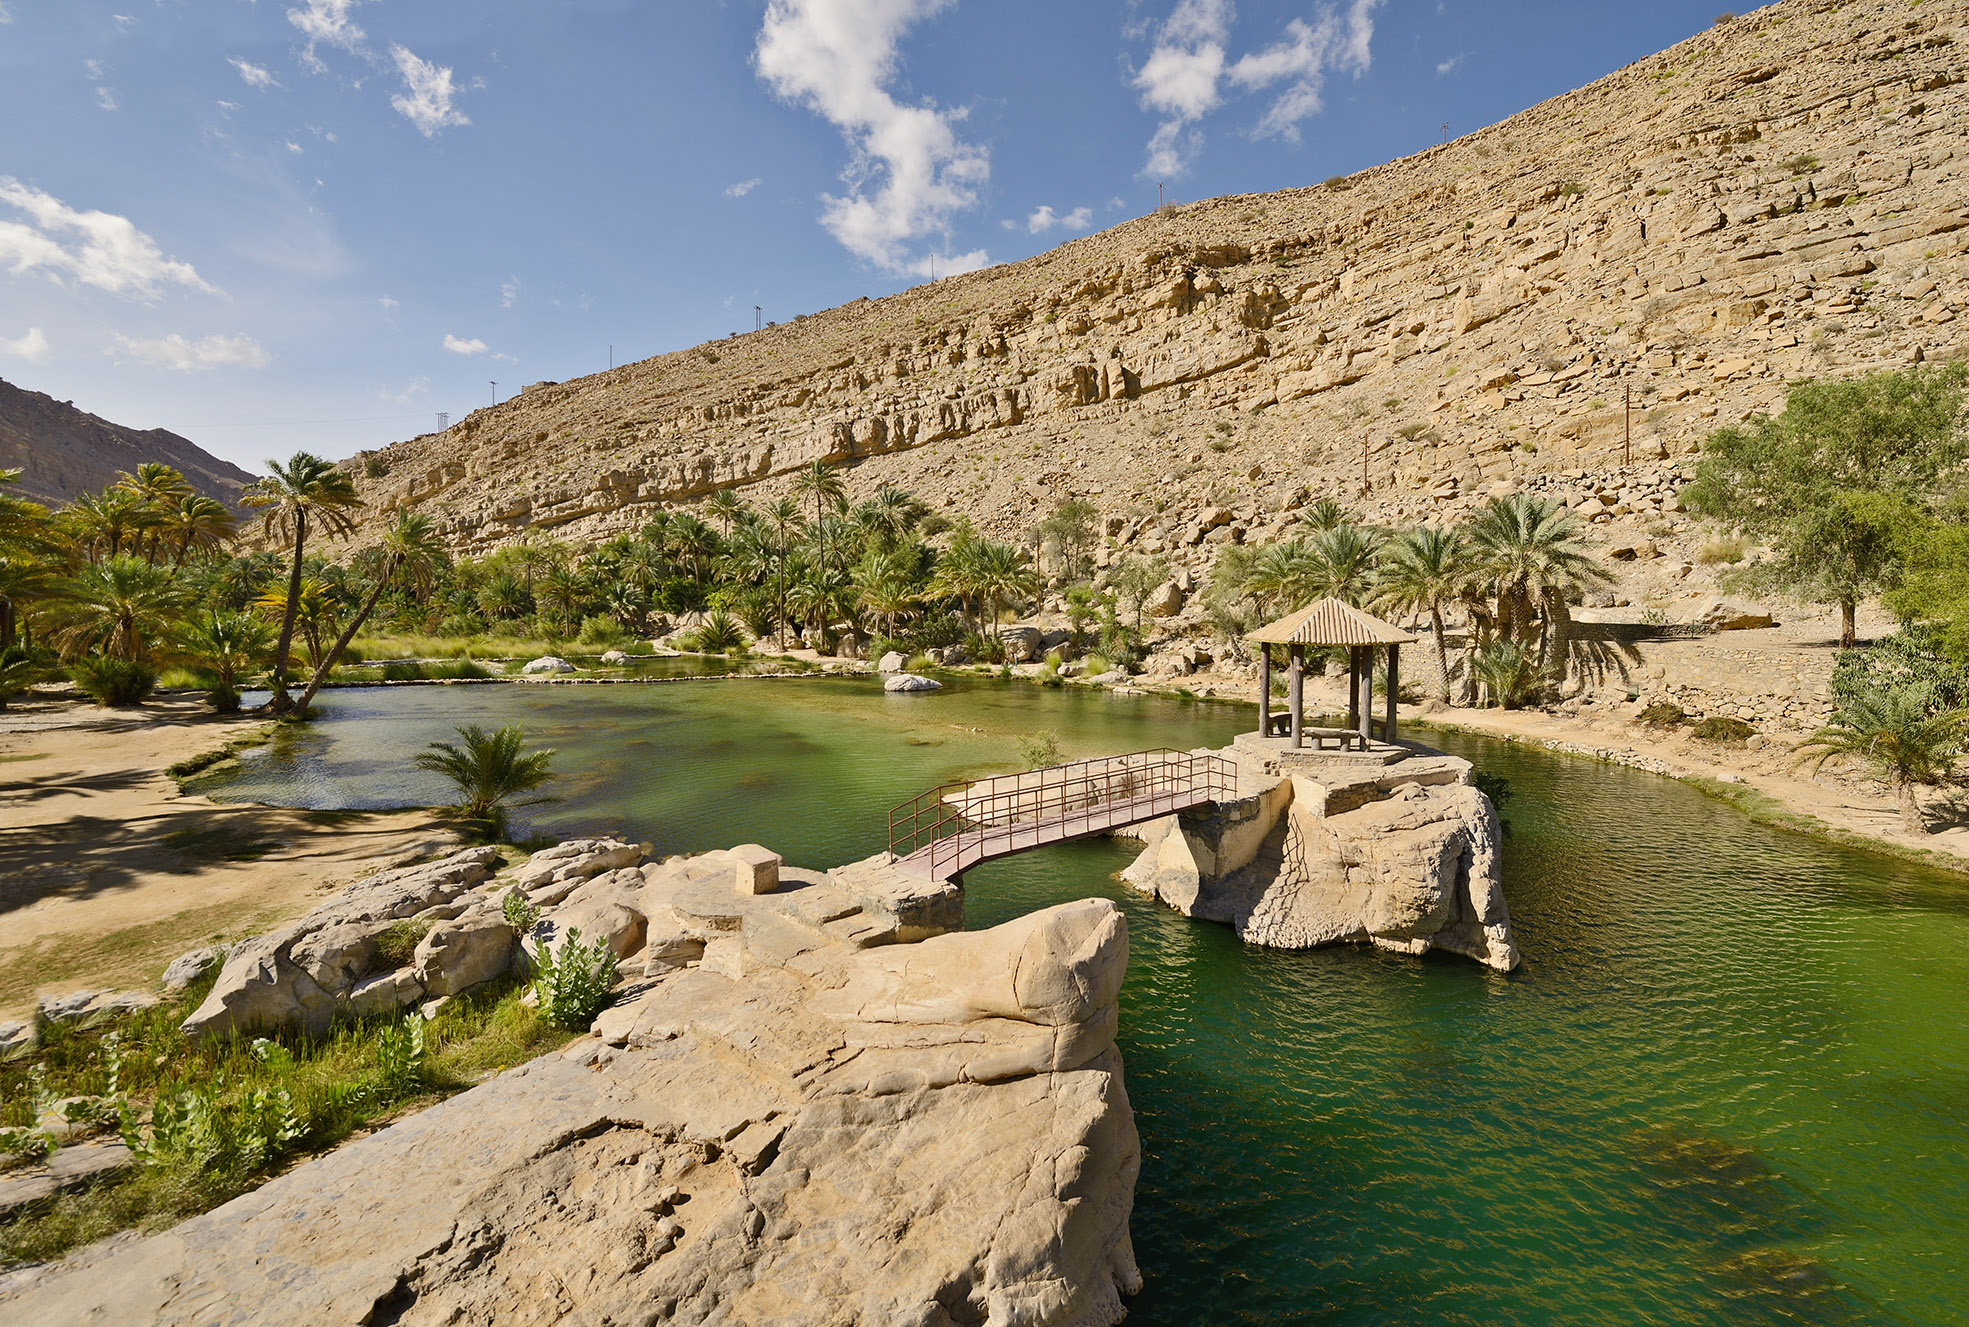 220 ألف زائر للبرك المائية بولاية وادي "بني خالد" في 2019